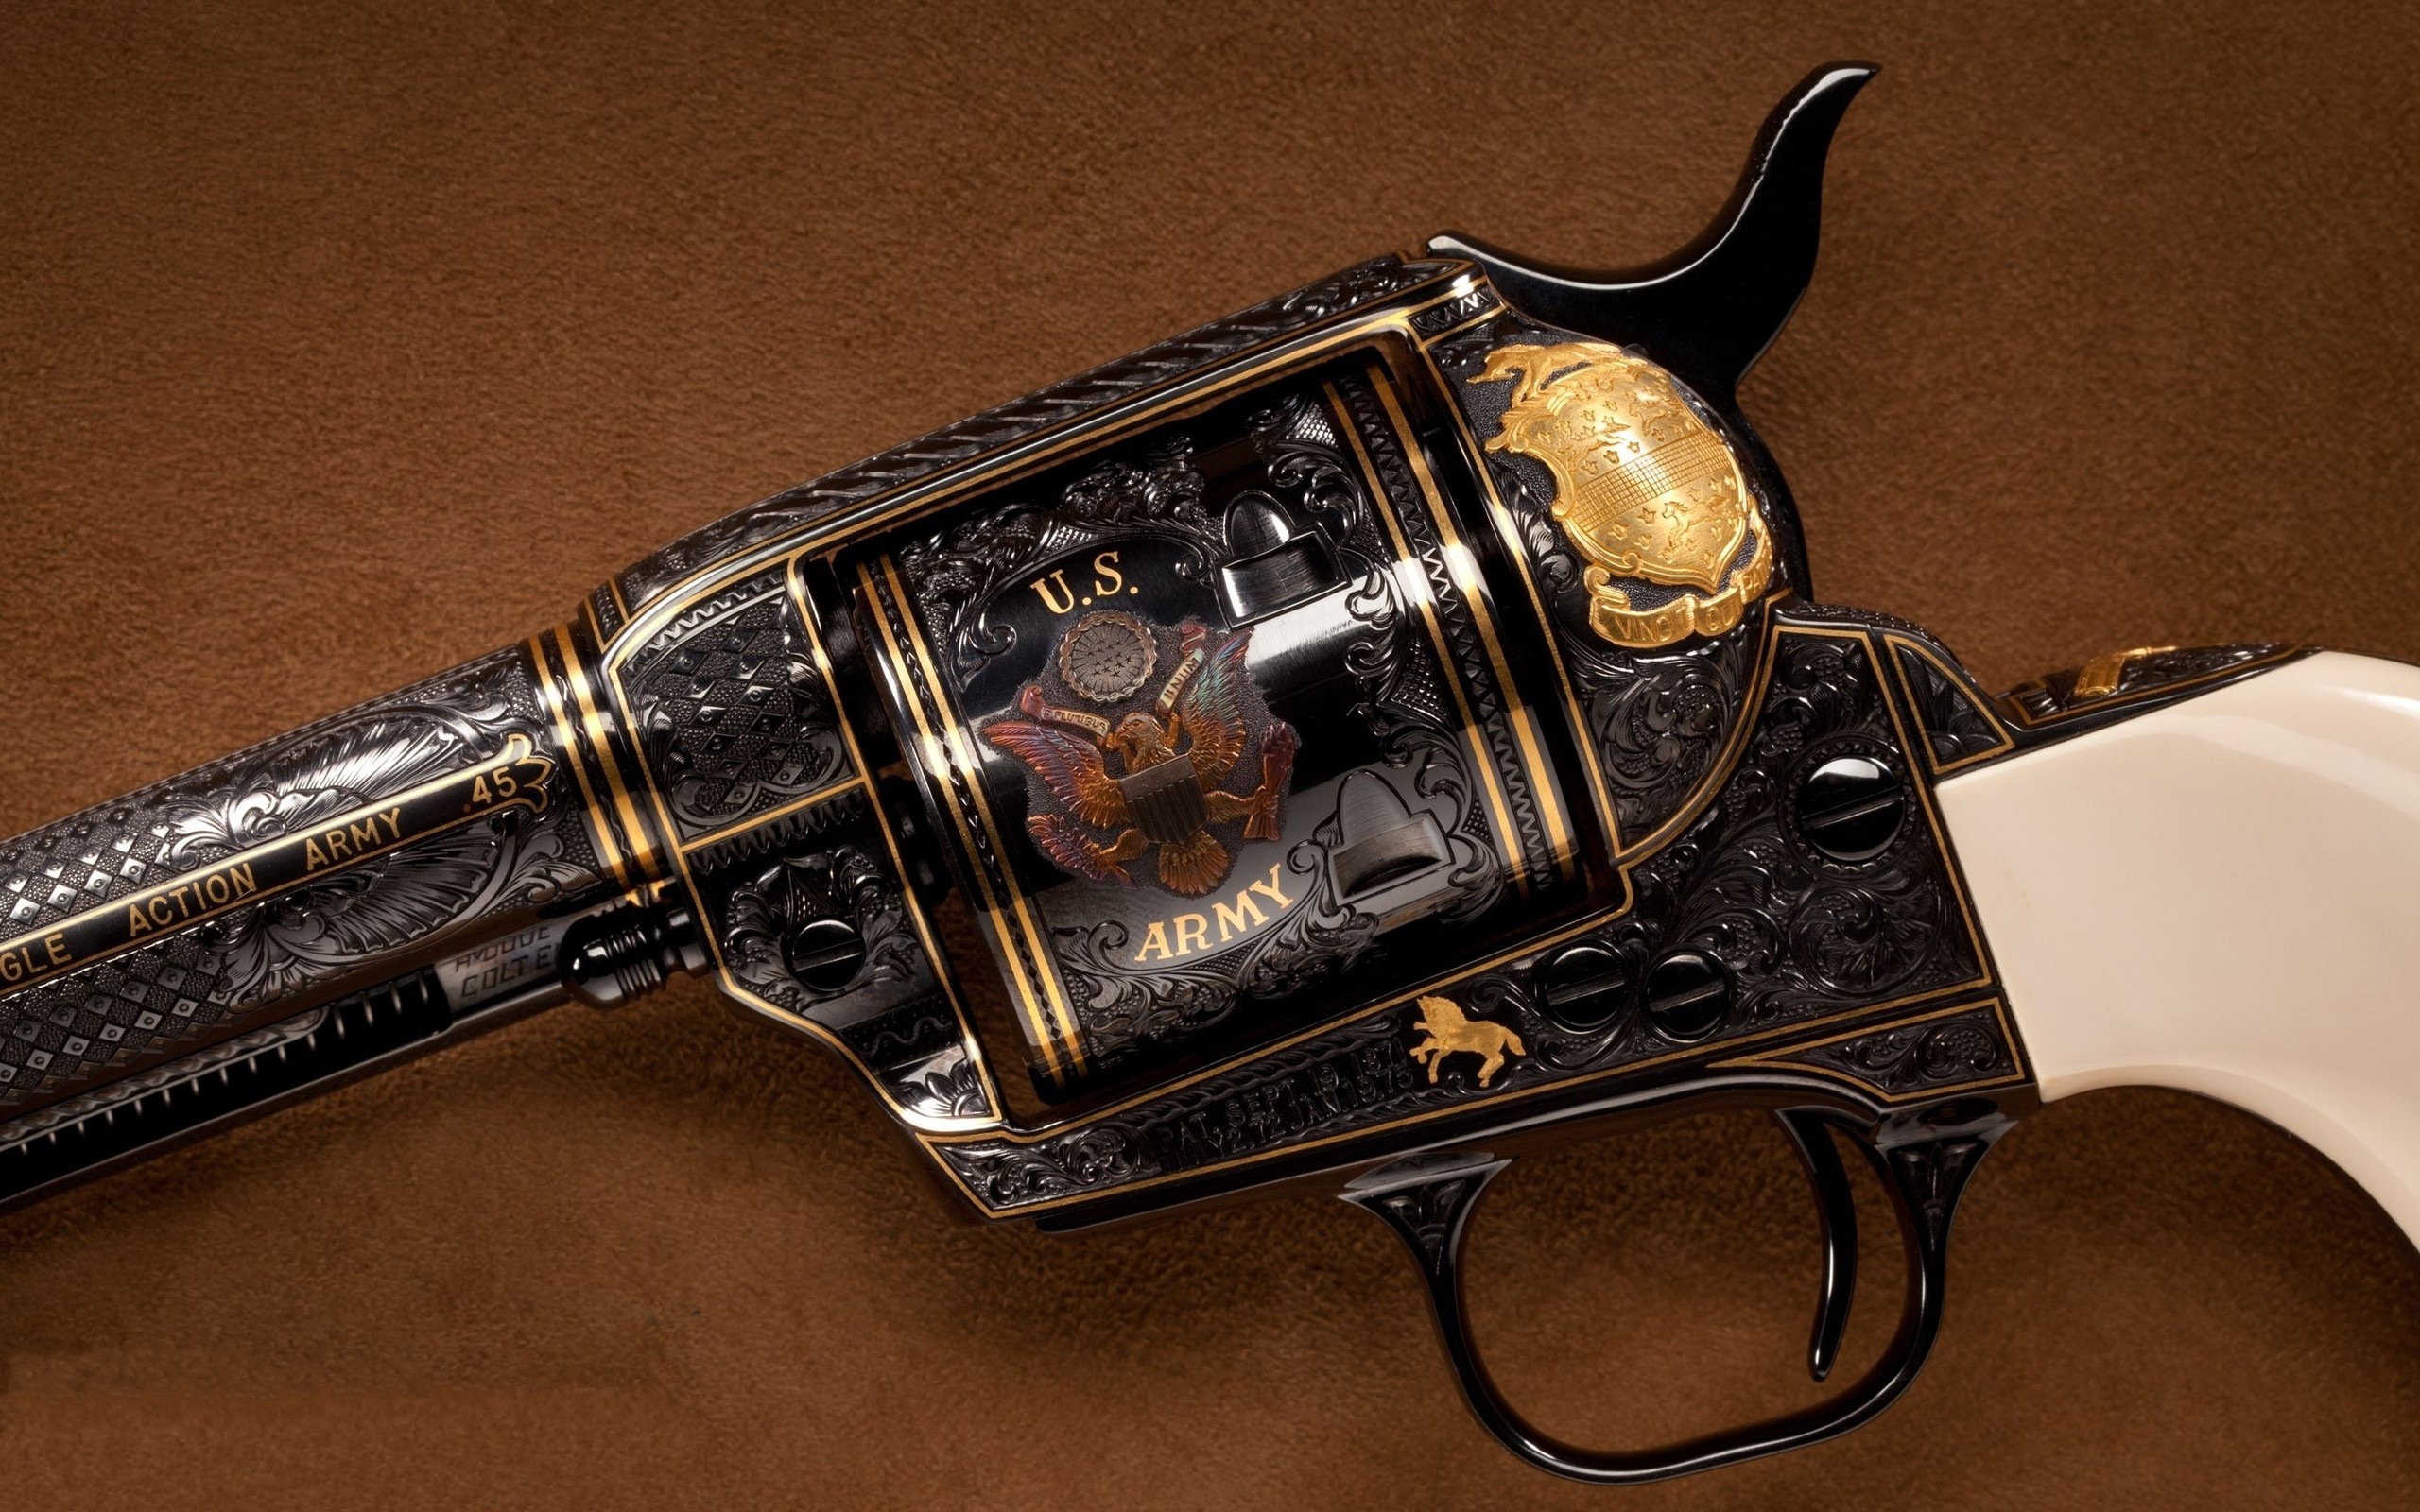 General 2560x1600 gun Colt movies revolver weapon